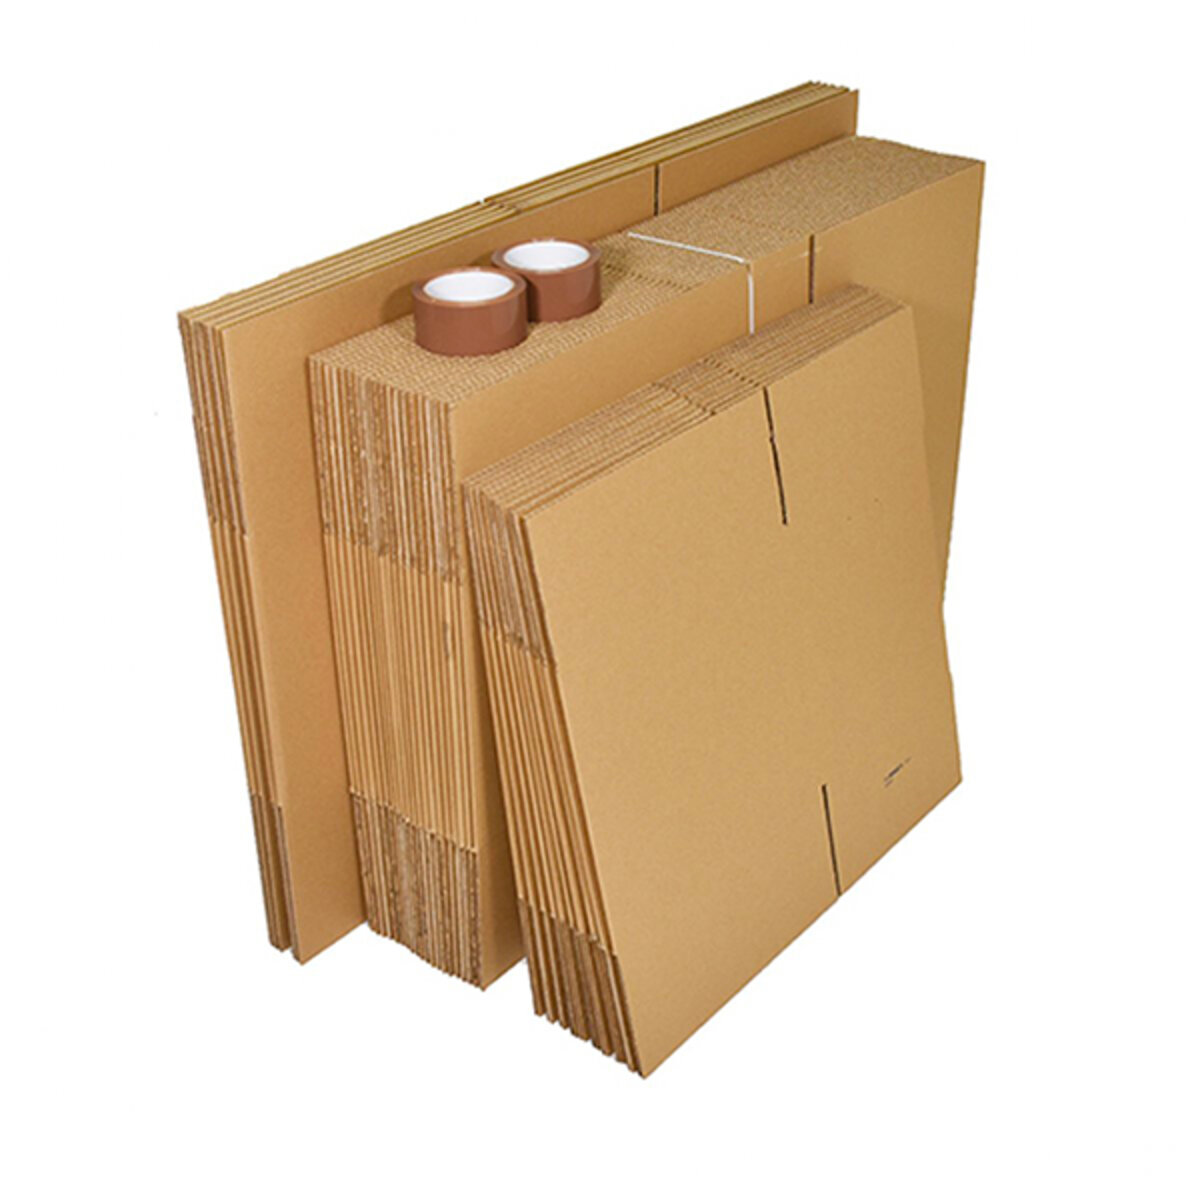 Carton déménagement livres poignées, 35x27,5x30cm